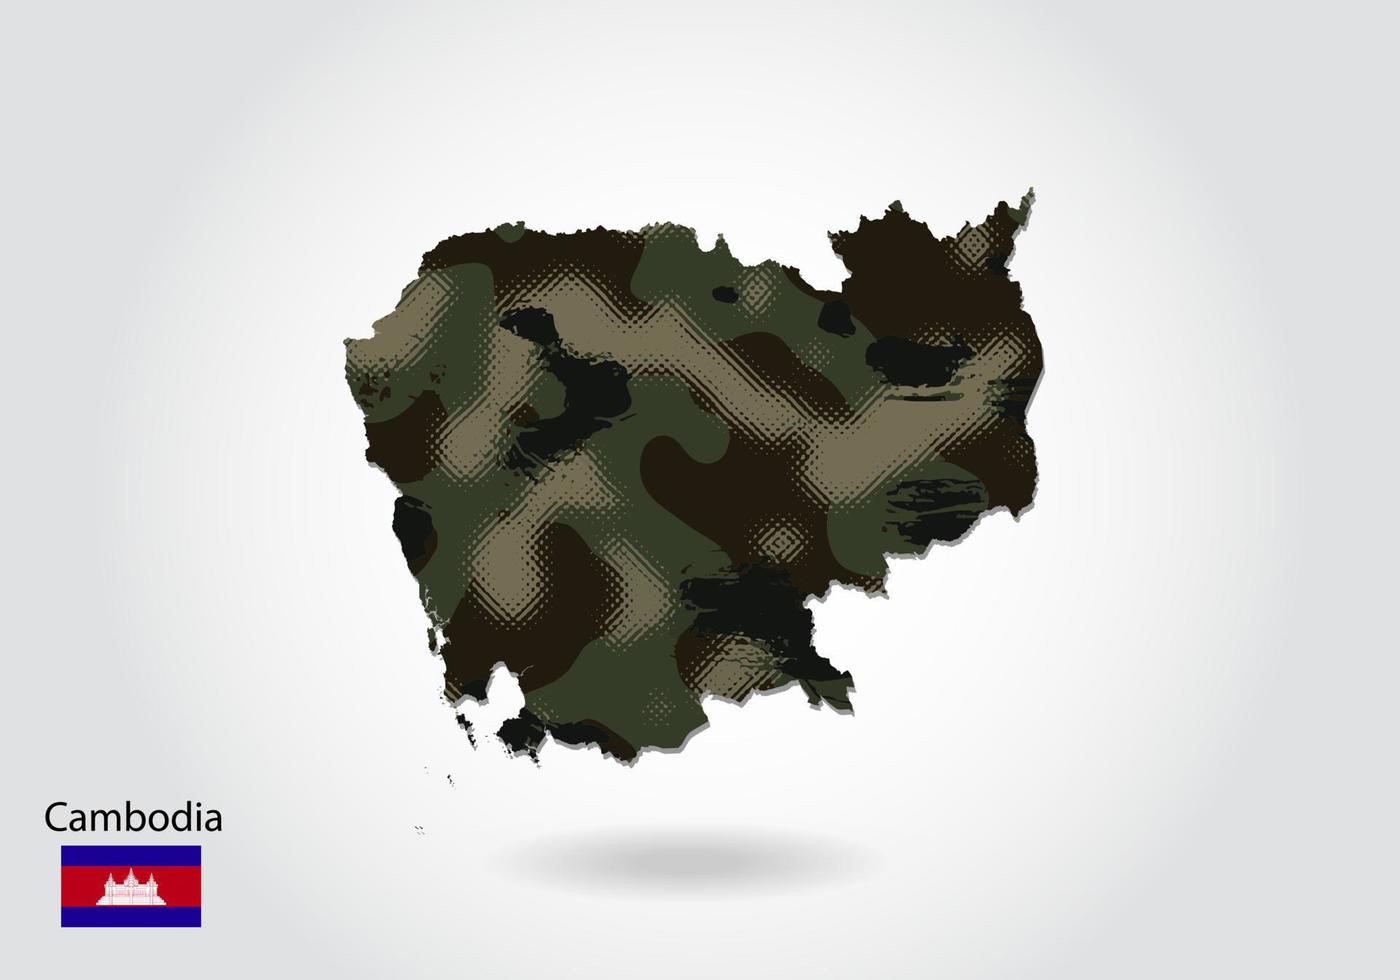 mapa do camboja com padrão de camuflagem, floresta - textura verde no mapa. conceito militar para exército, soldado e guerra. brasão, bandeira. vetor